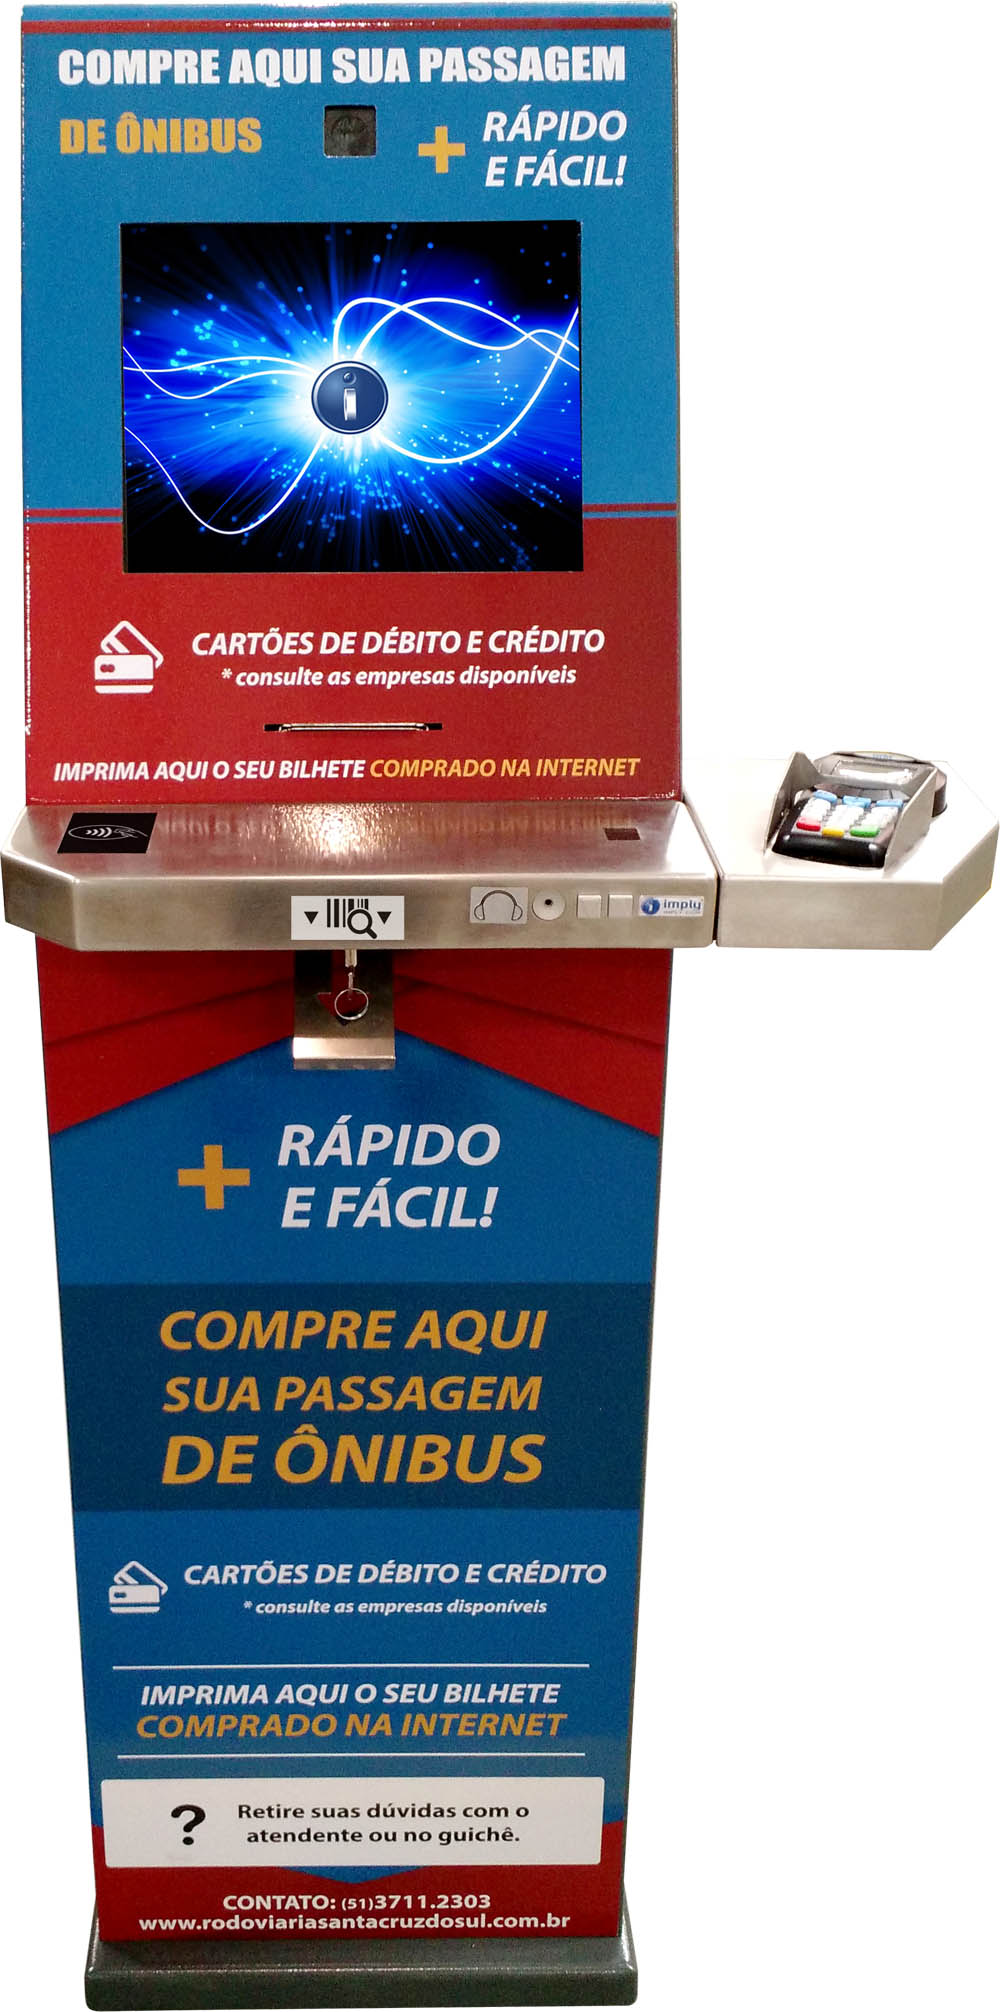 Terminal de autoservicio Imply integra el sistema de venta de boletos de la estación de autobuses de Santa Cruz do Sul